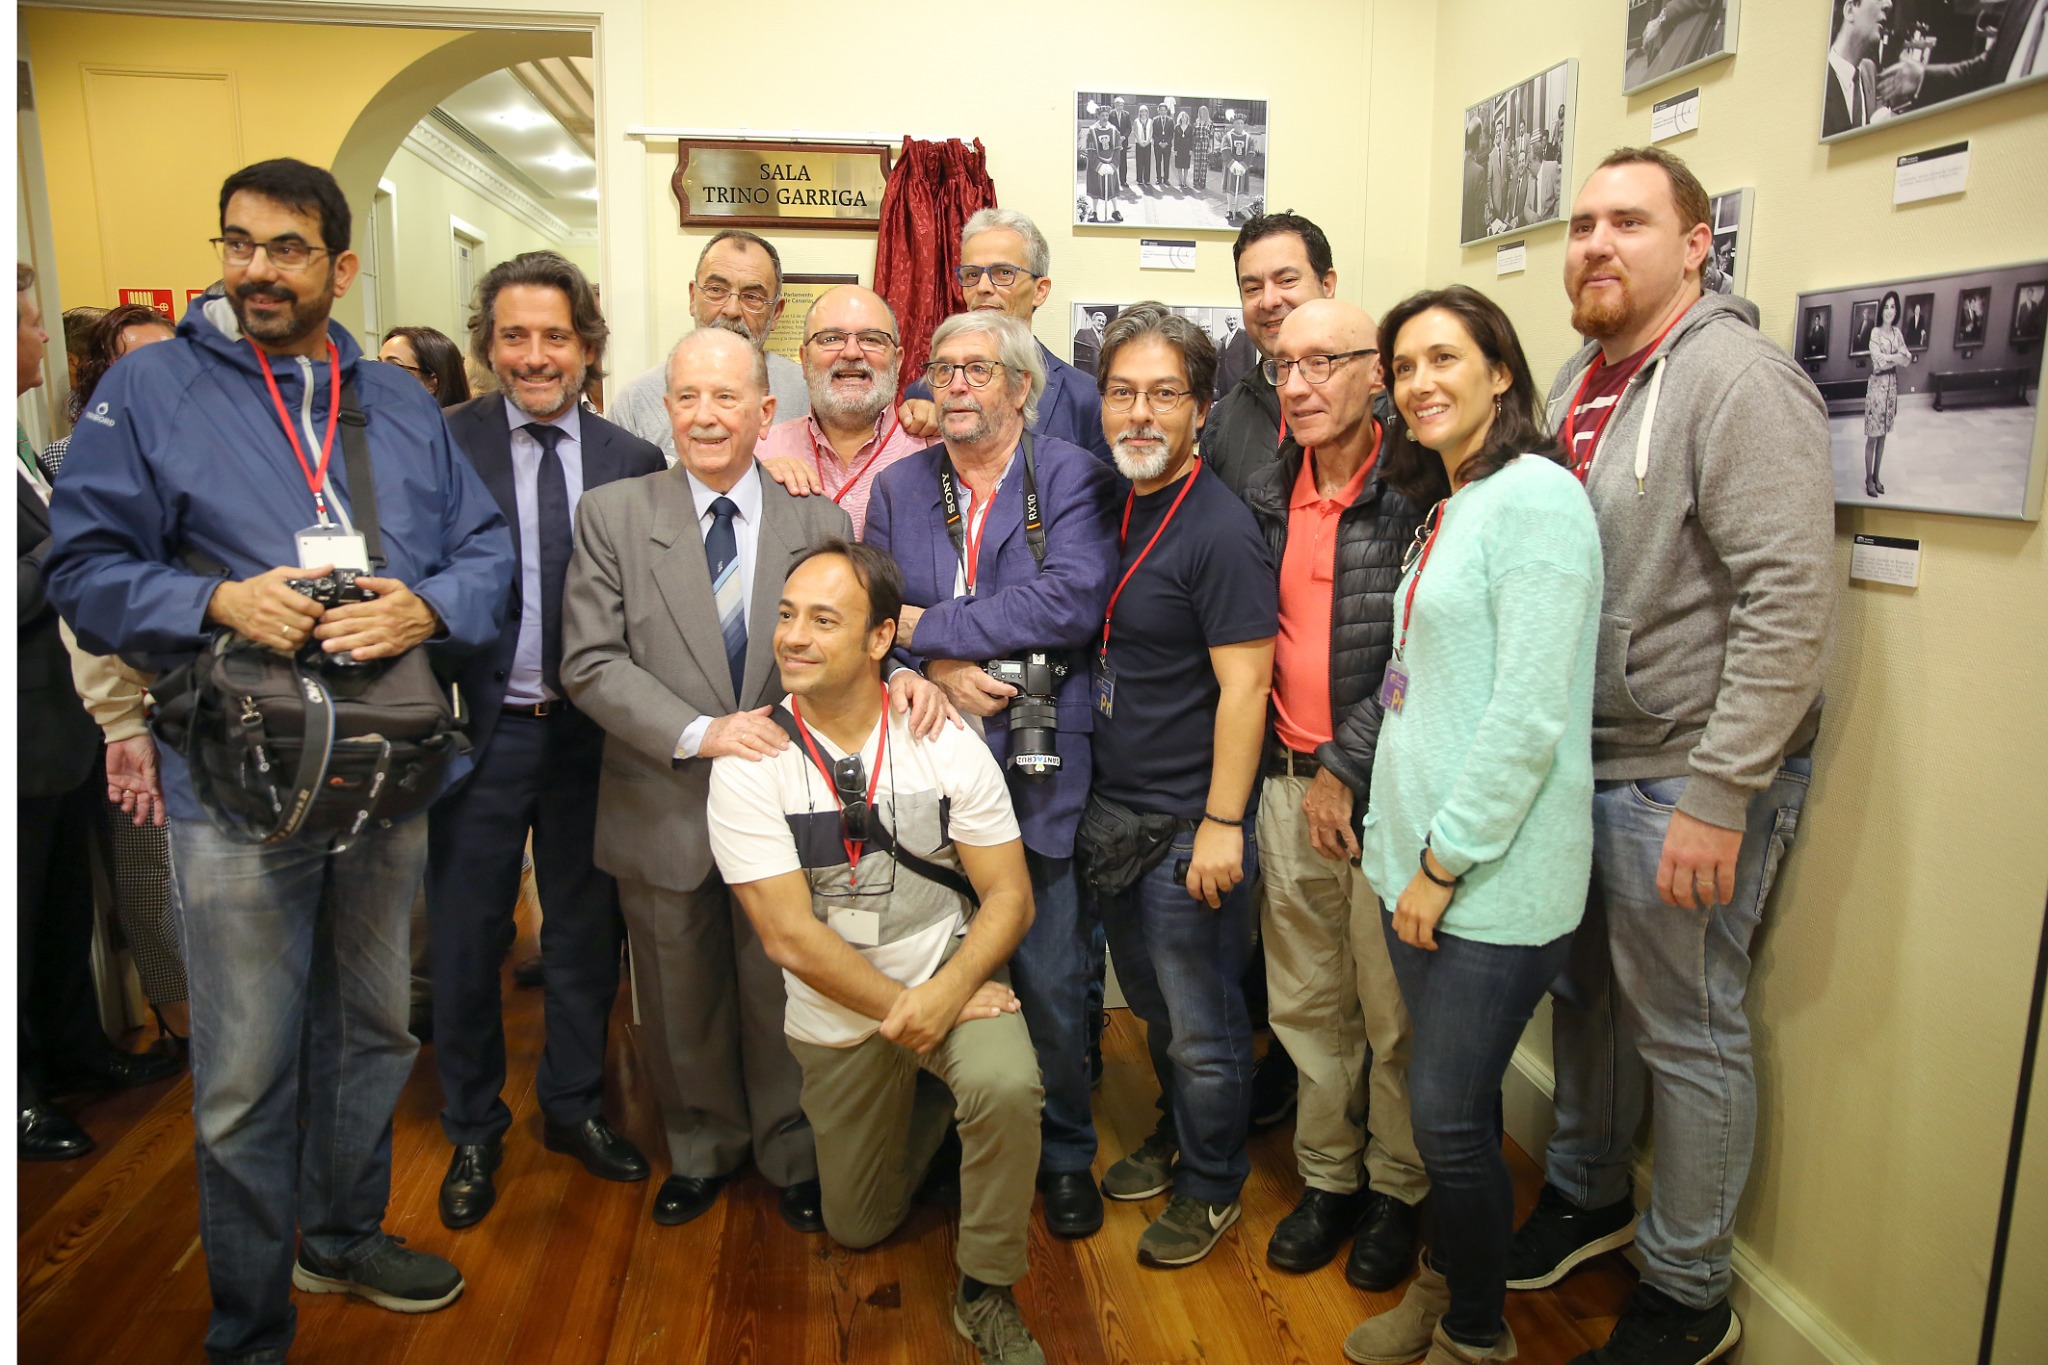 El fotógrafo Trino Garriga posa junto a los compañeros de prensa